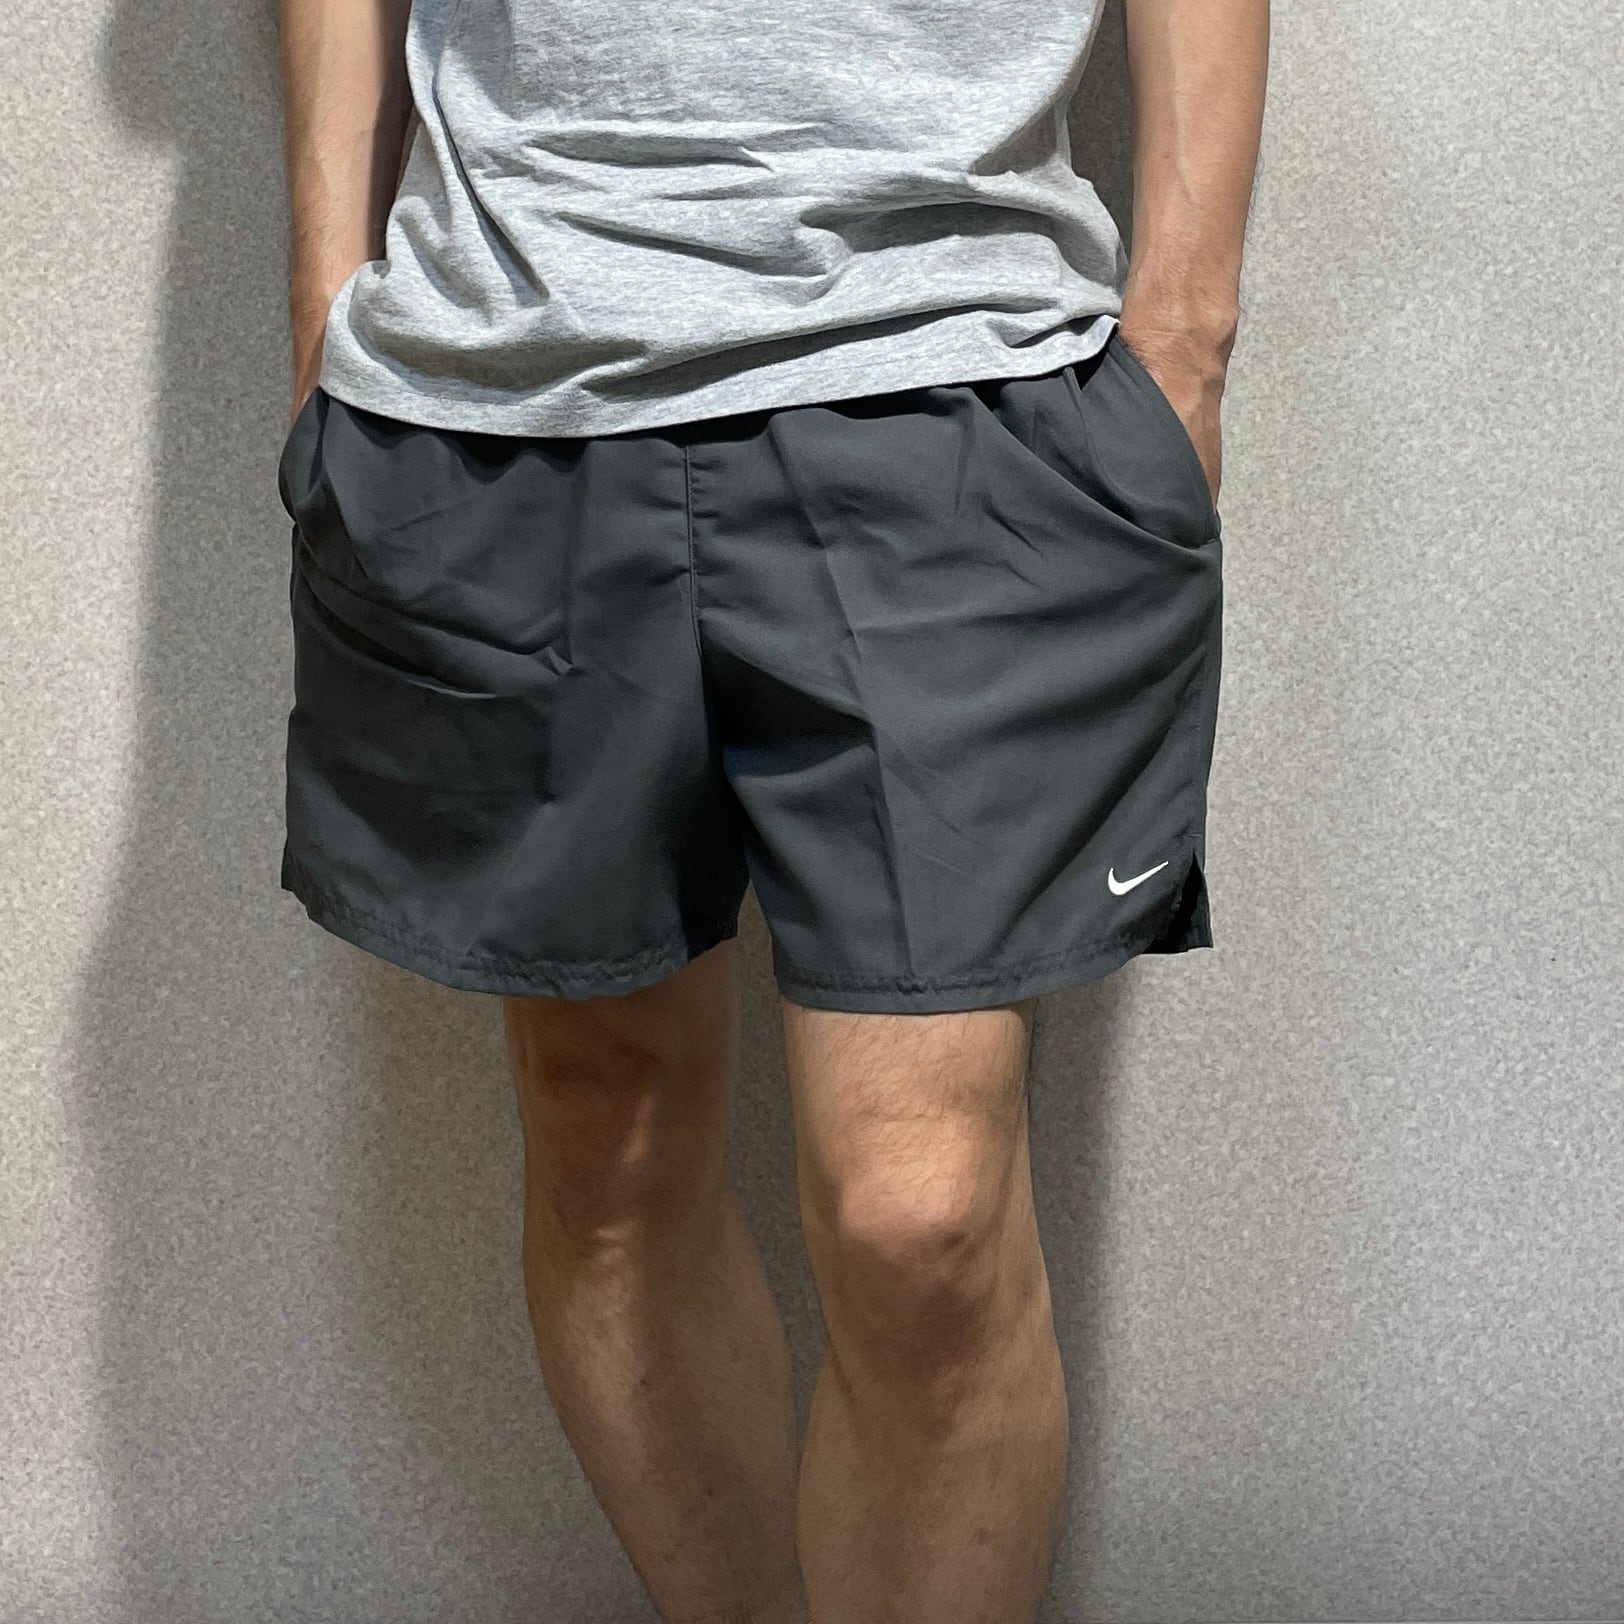 【NIKE】swim short pants shorts ナイキ スウィム ショートパンツ